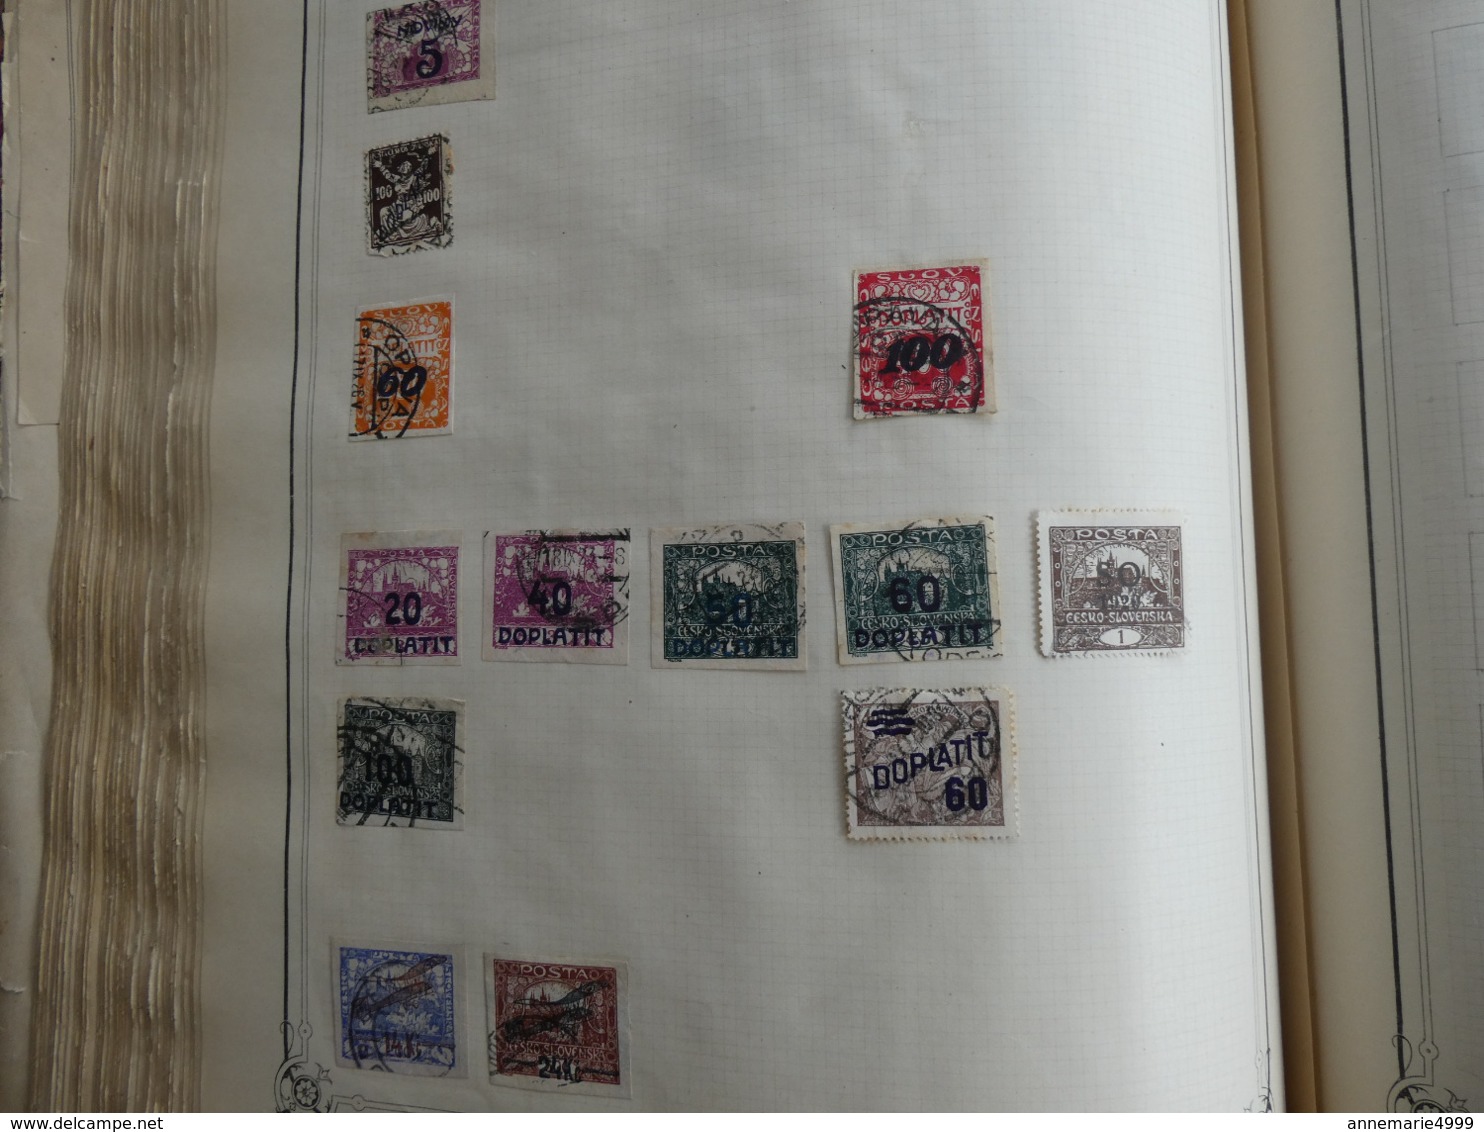 MONDE  Collection de plusieurs milliers de timbres anciens tous pays